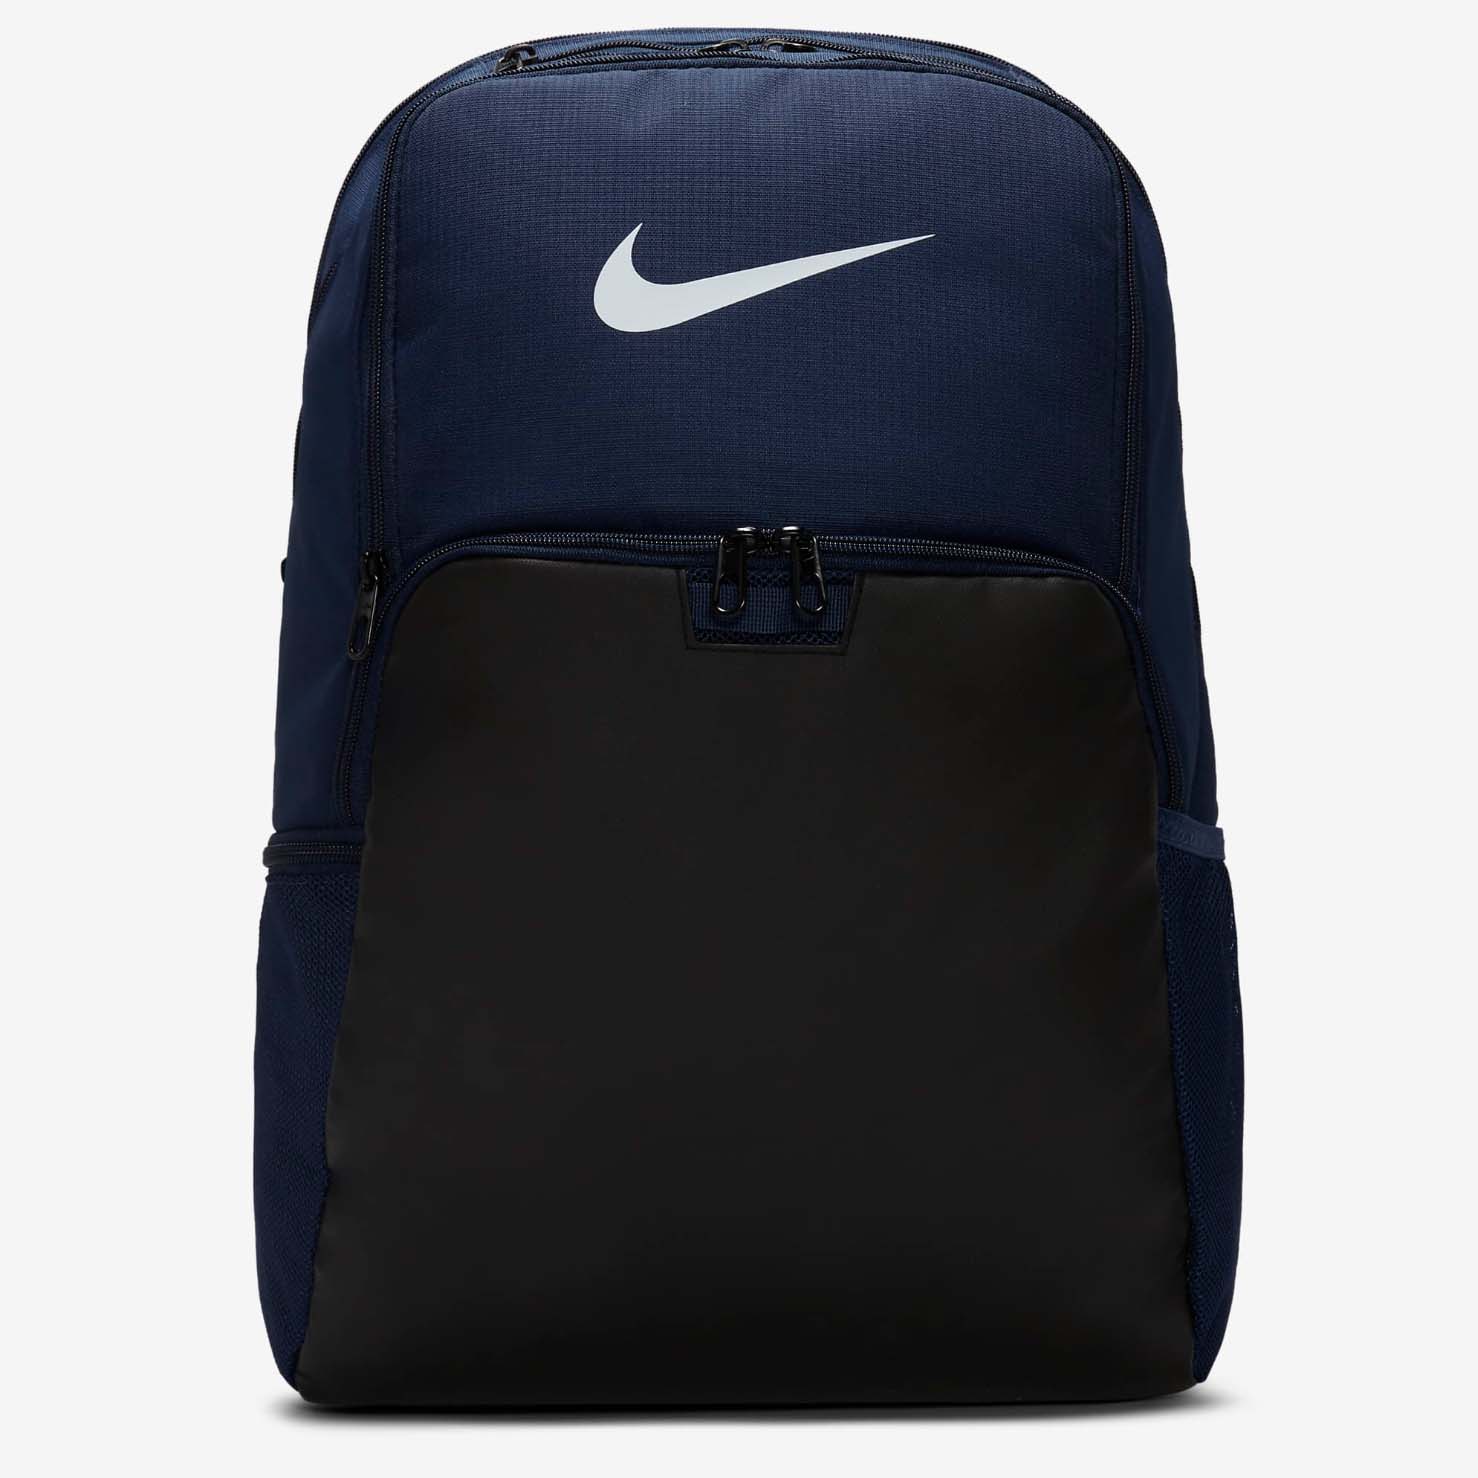 Dark blue Nike backpack